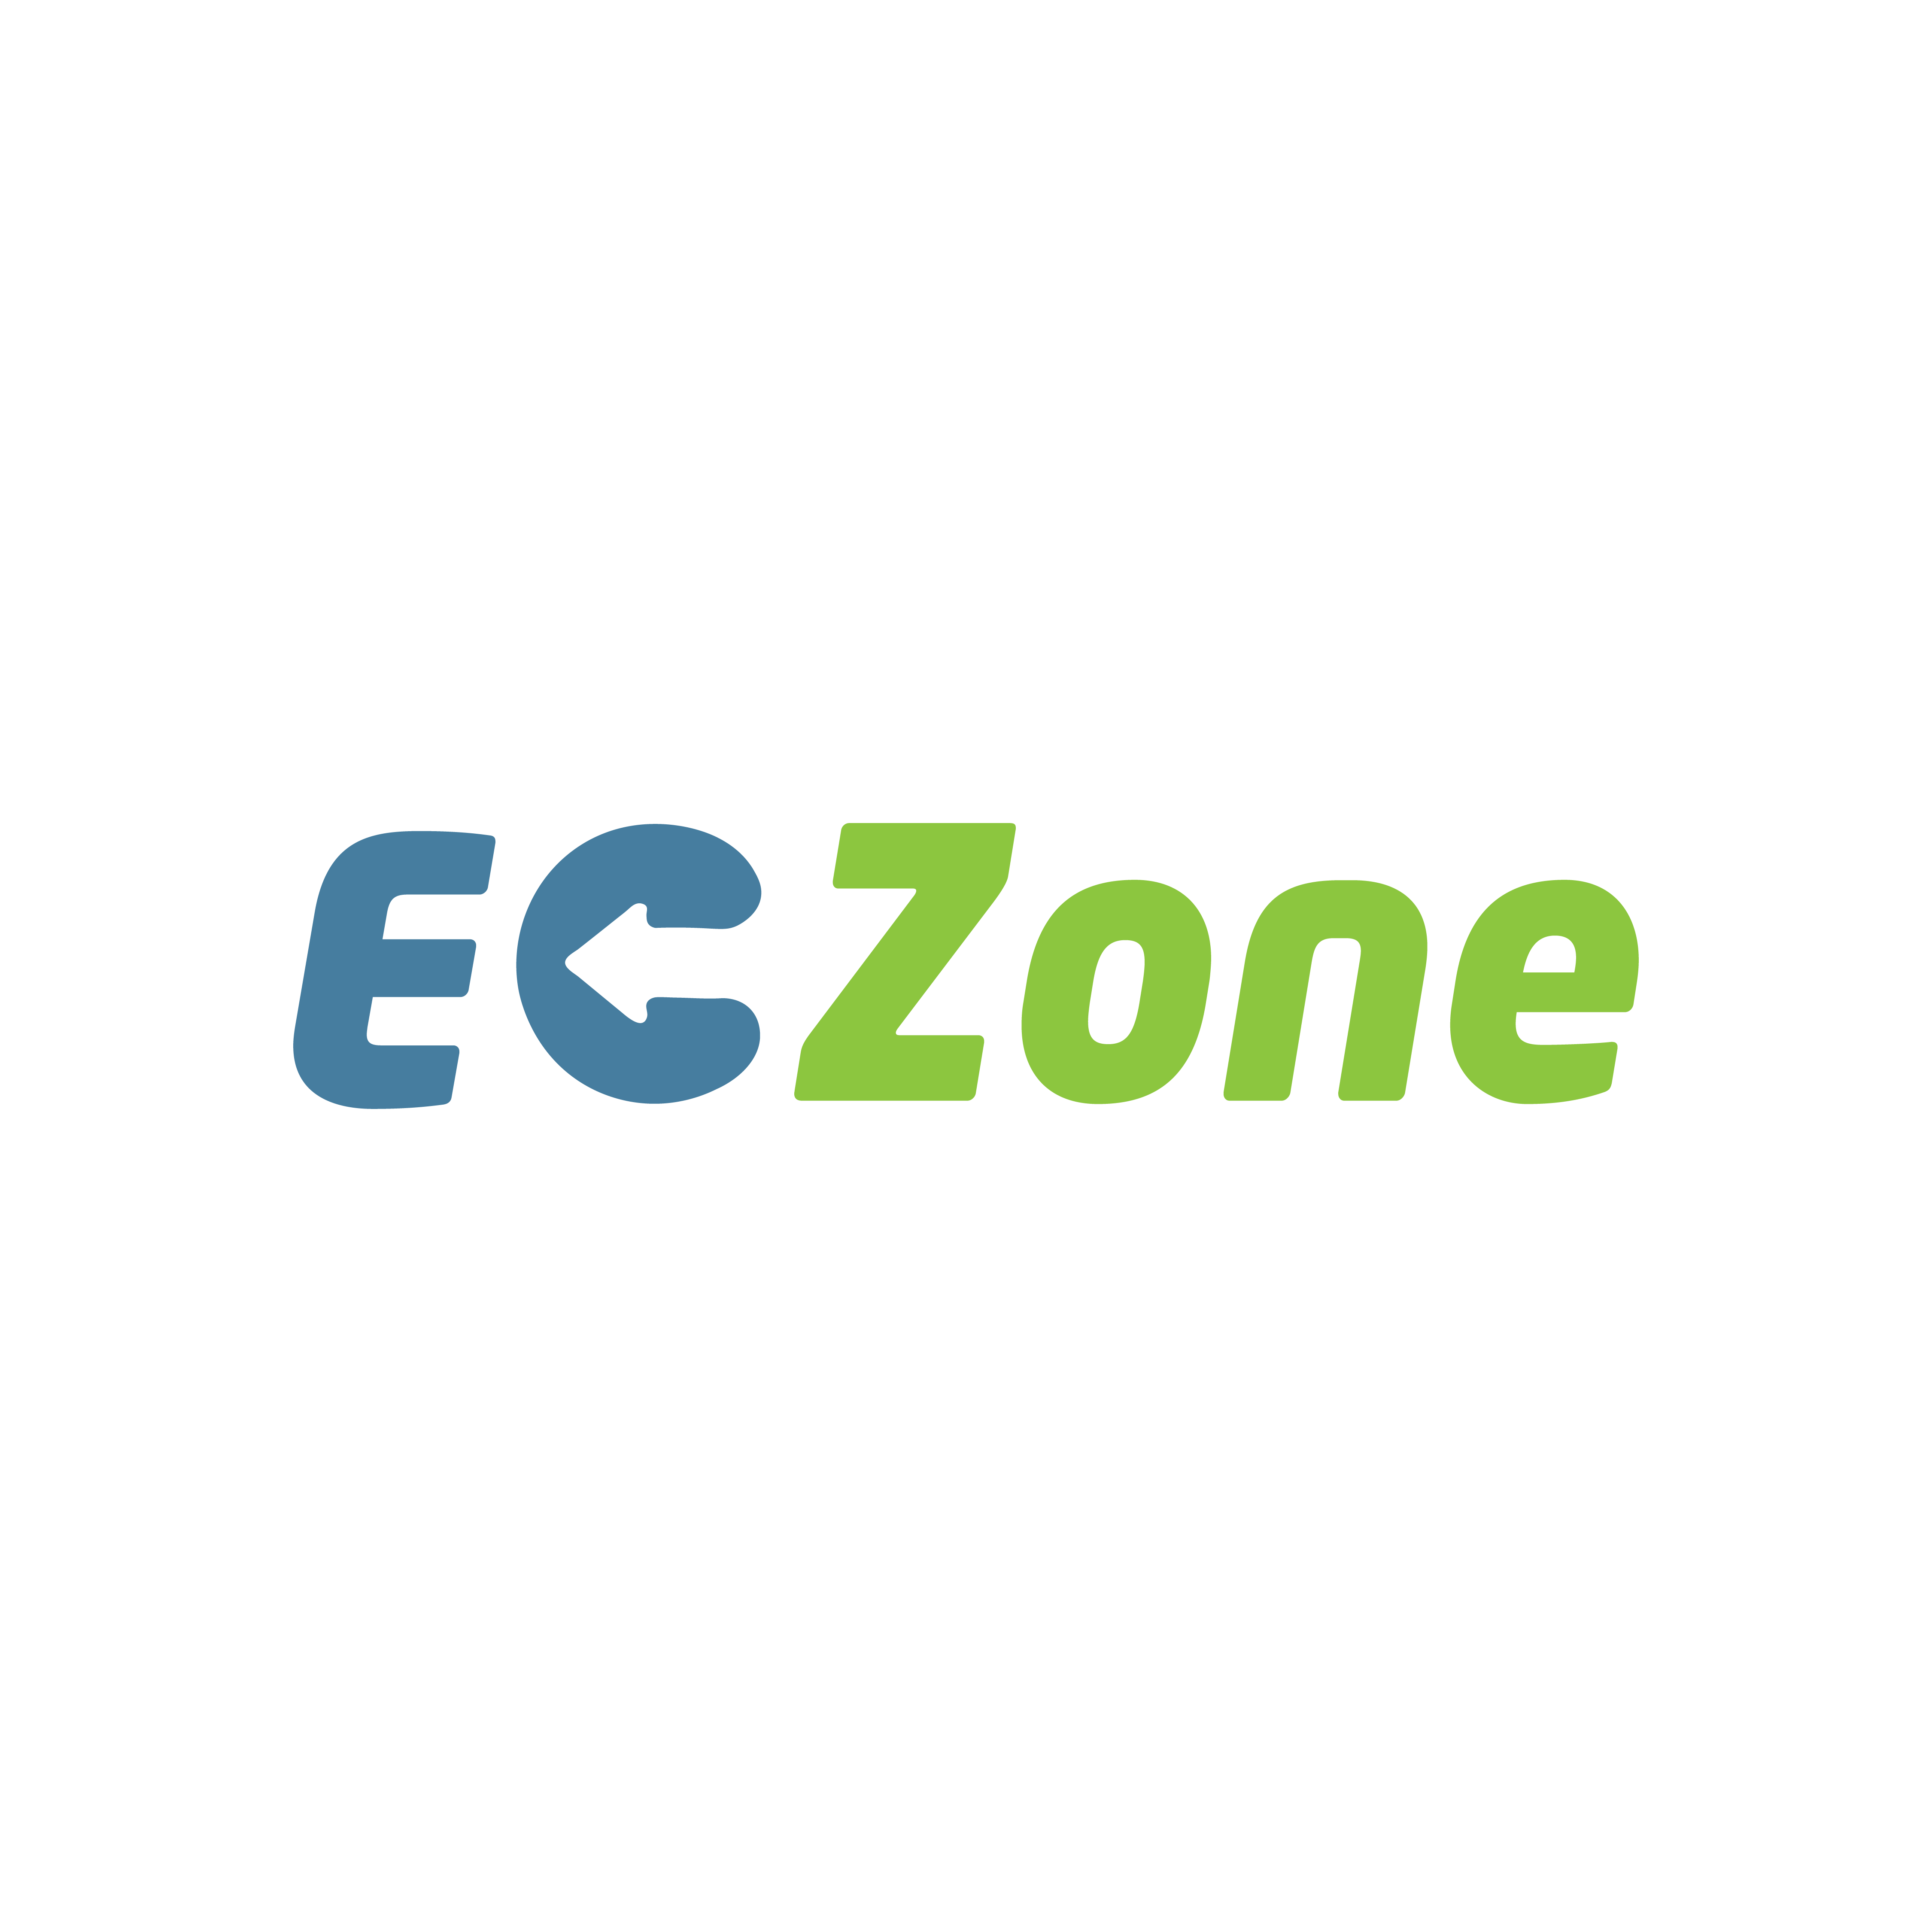 EC Zone